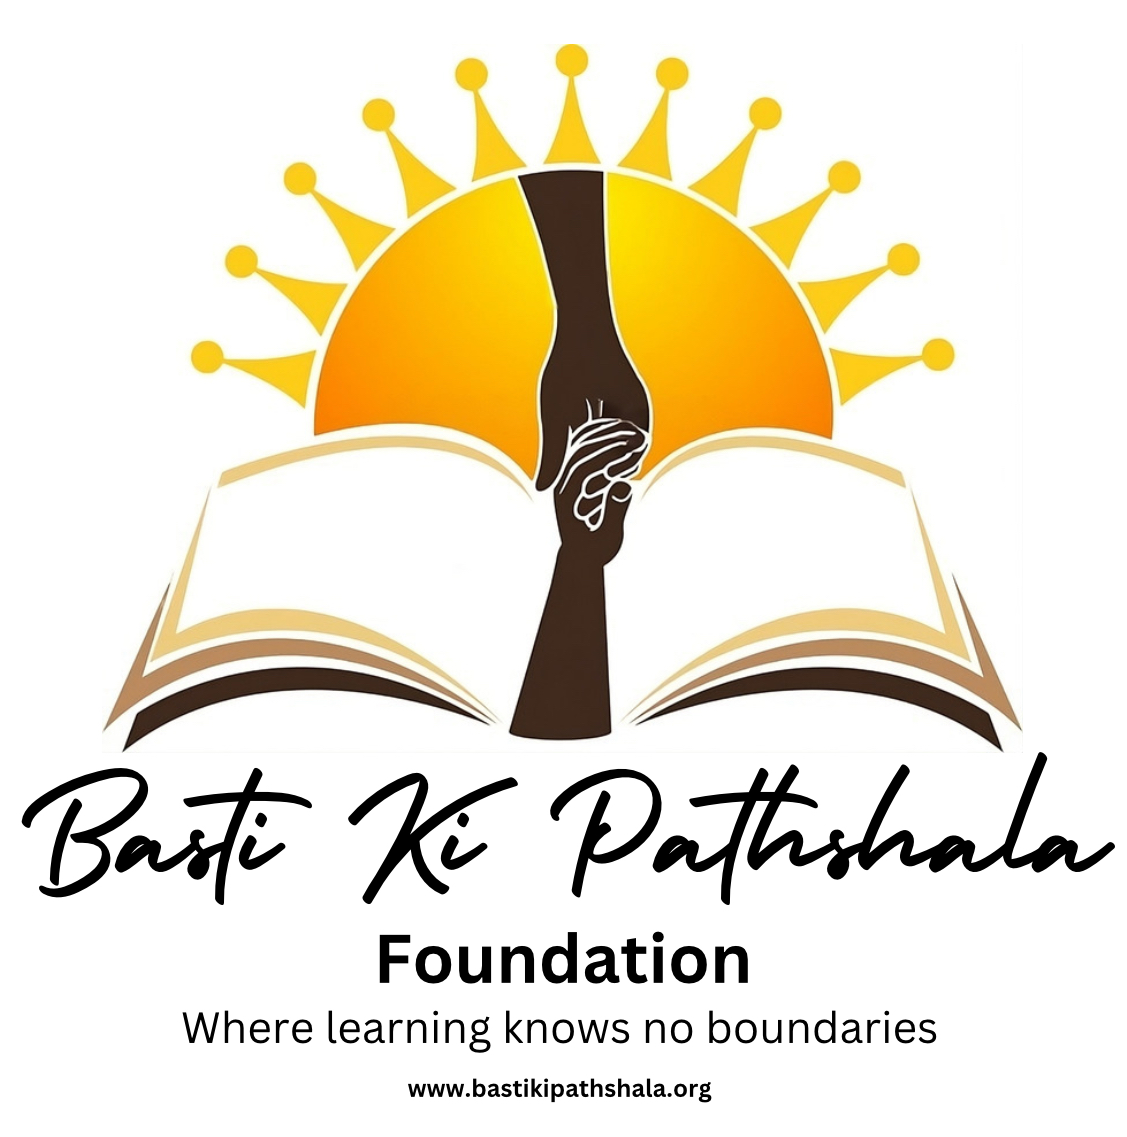 Basti Ki Pathshala Foundation